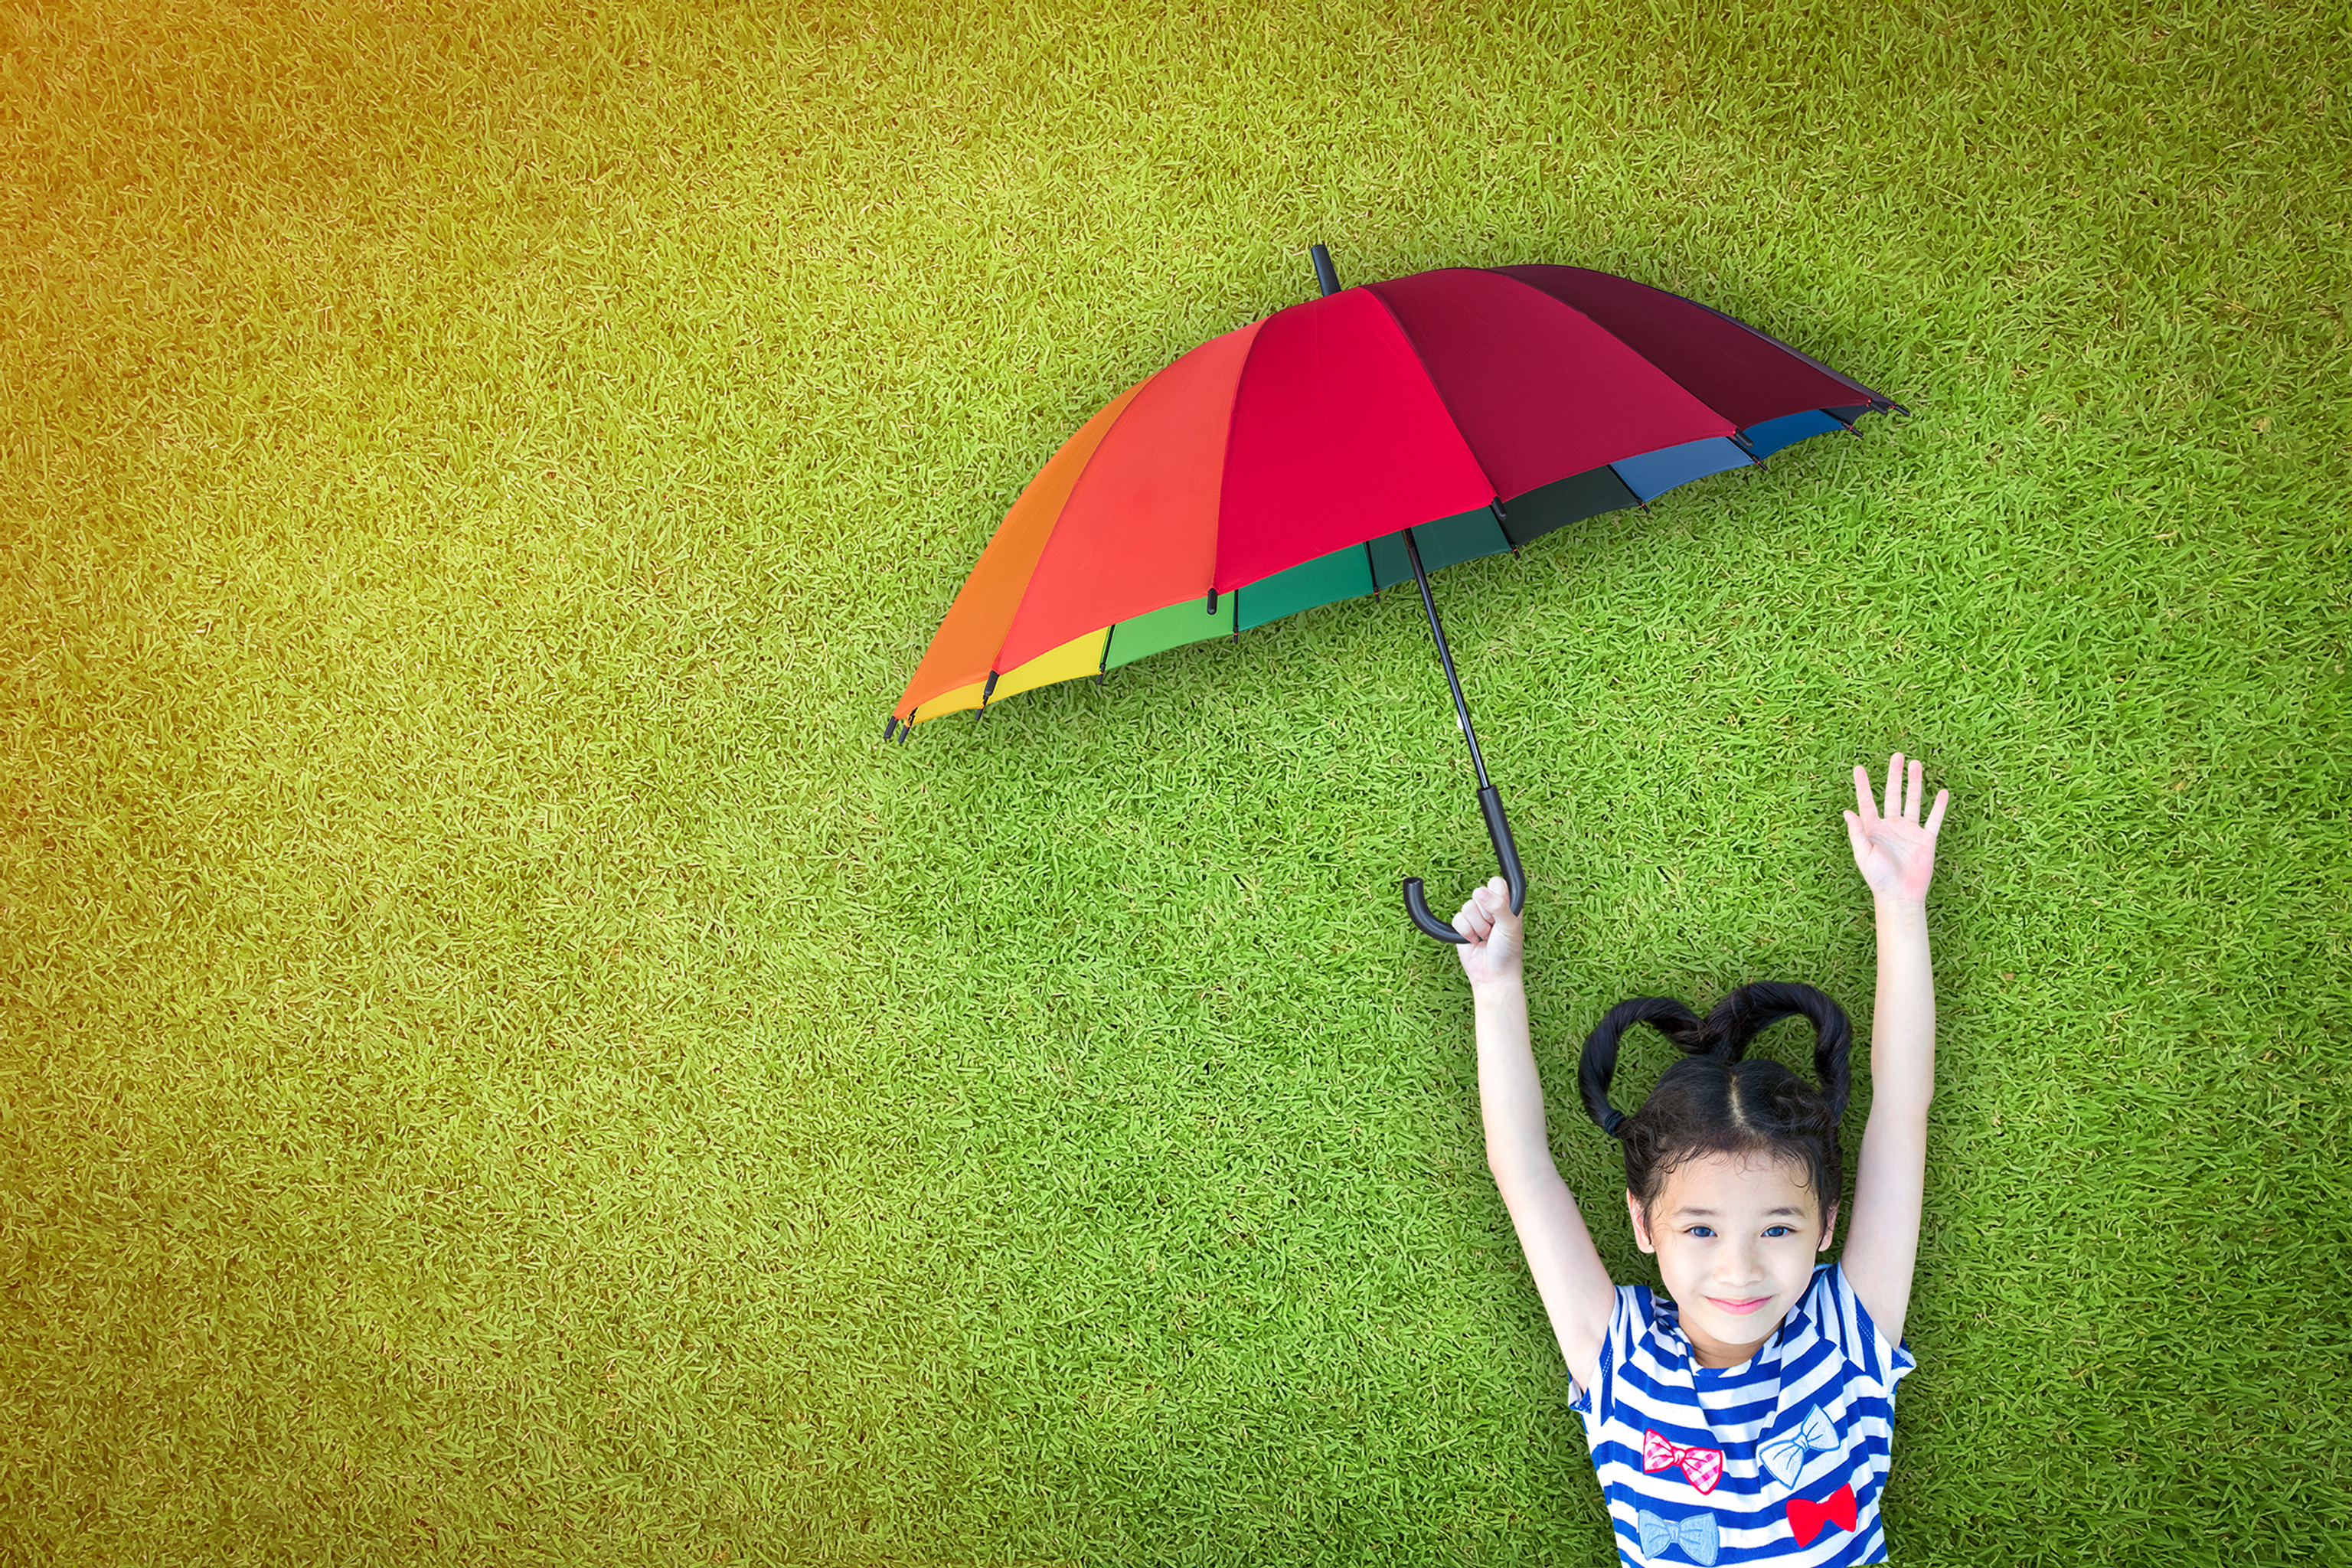 Цена жизни ребенка. Семья под зонтом. Под семейным зонтиком фото. Картинка дети держат зонтики в руках. Под семейным зонтиком Заголовок.